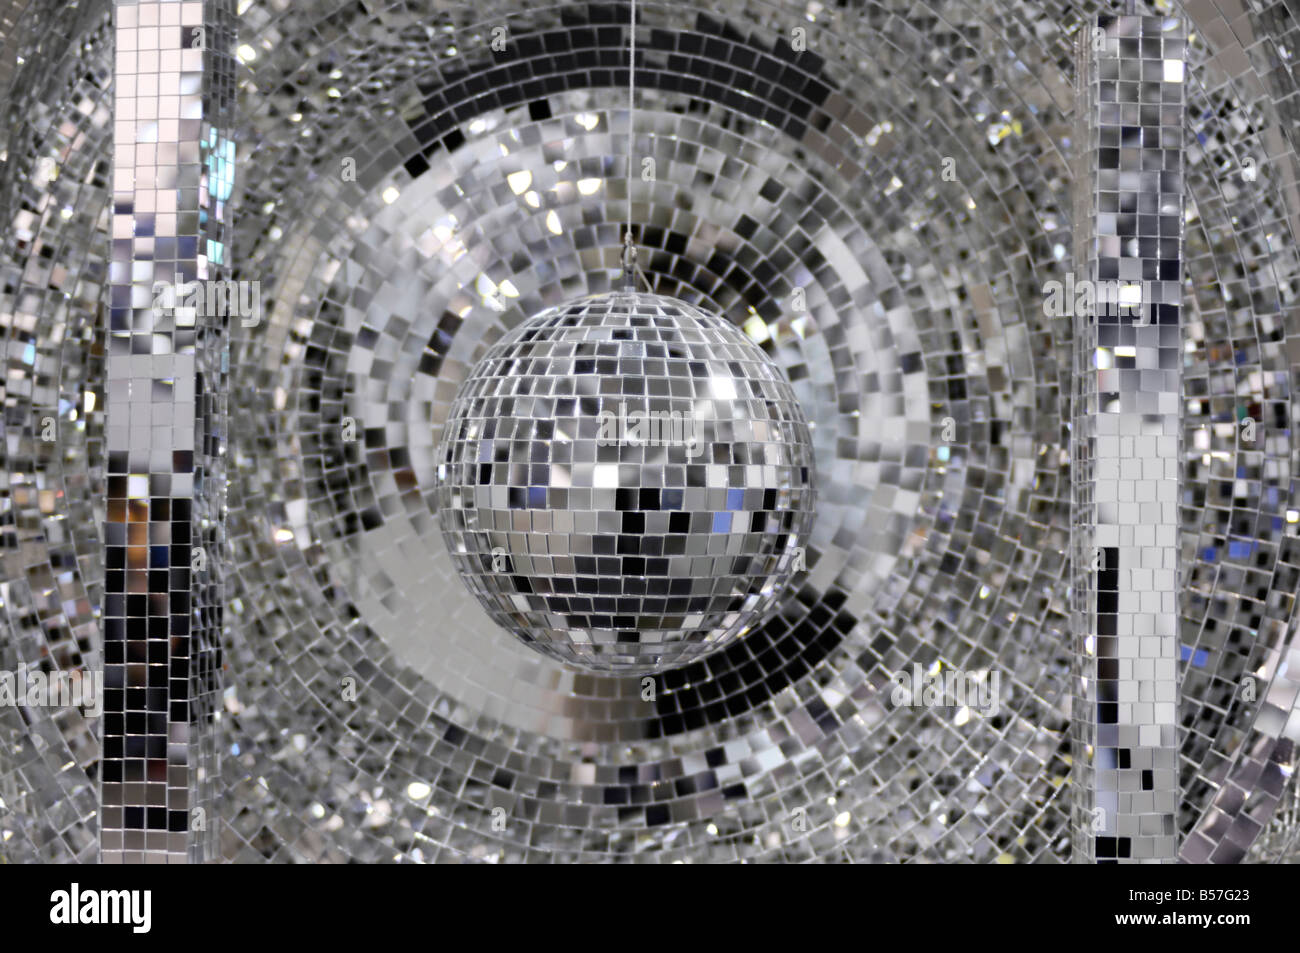 Ein Disco Ball Textur Hut isoliert auf weiß Stockfotografie - Alamy